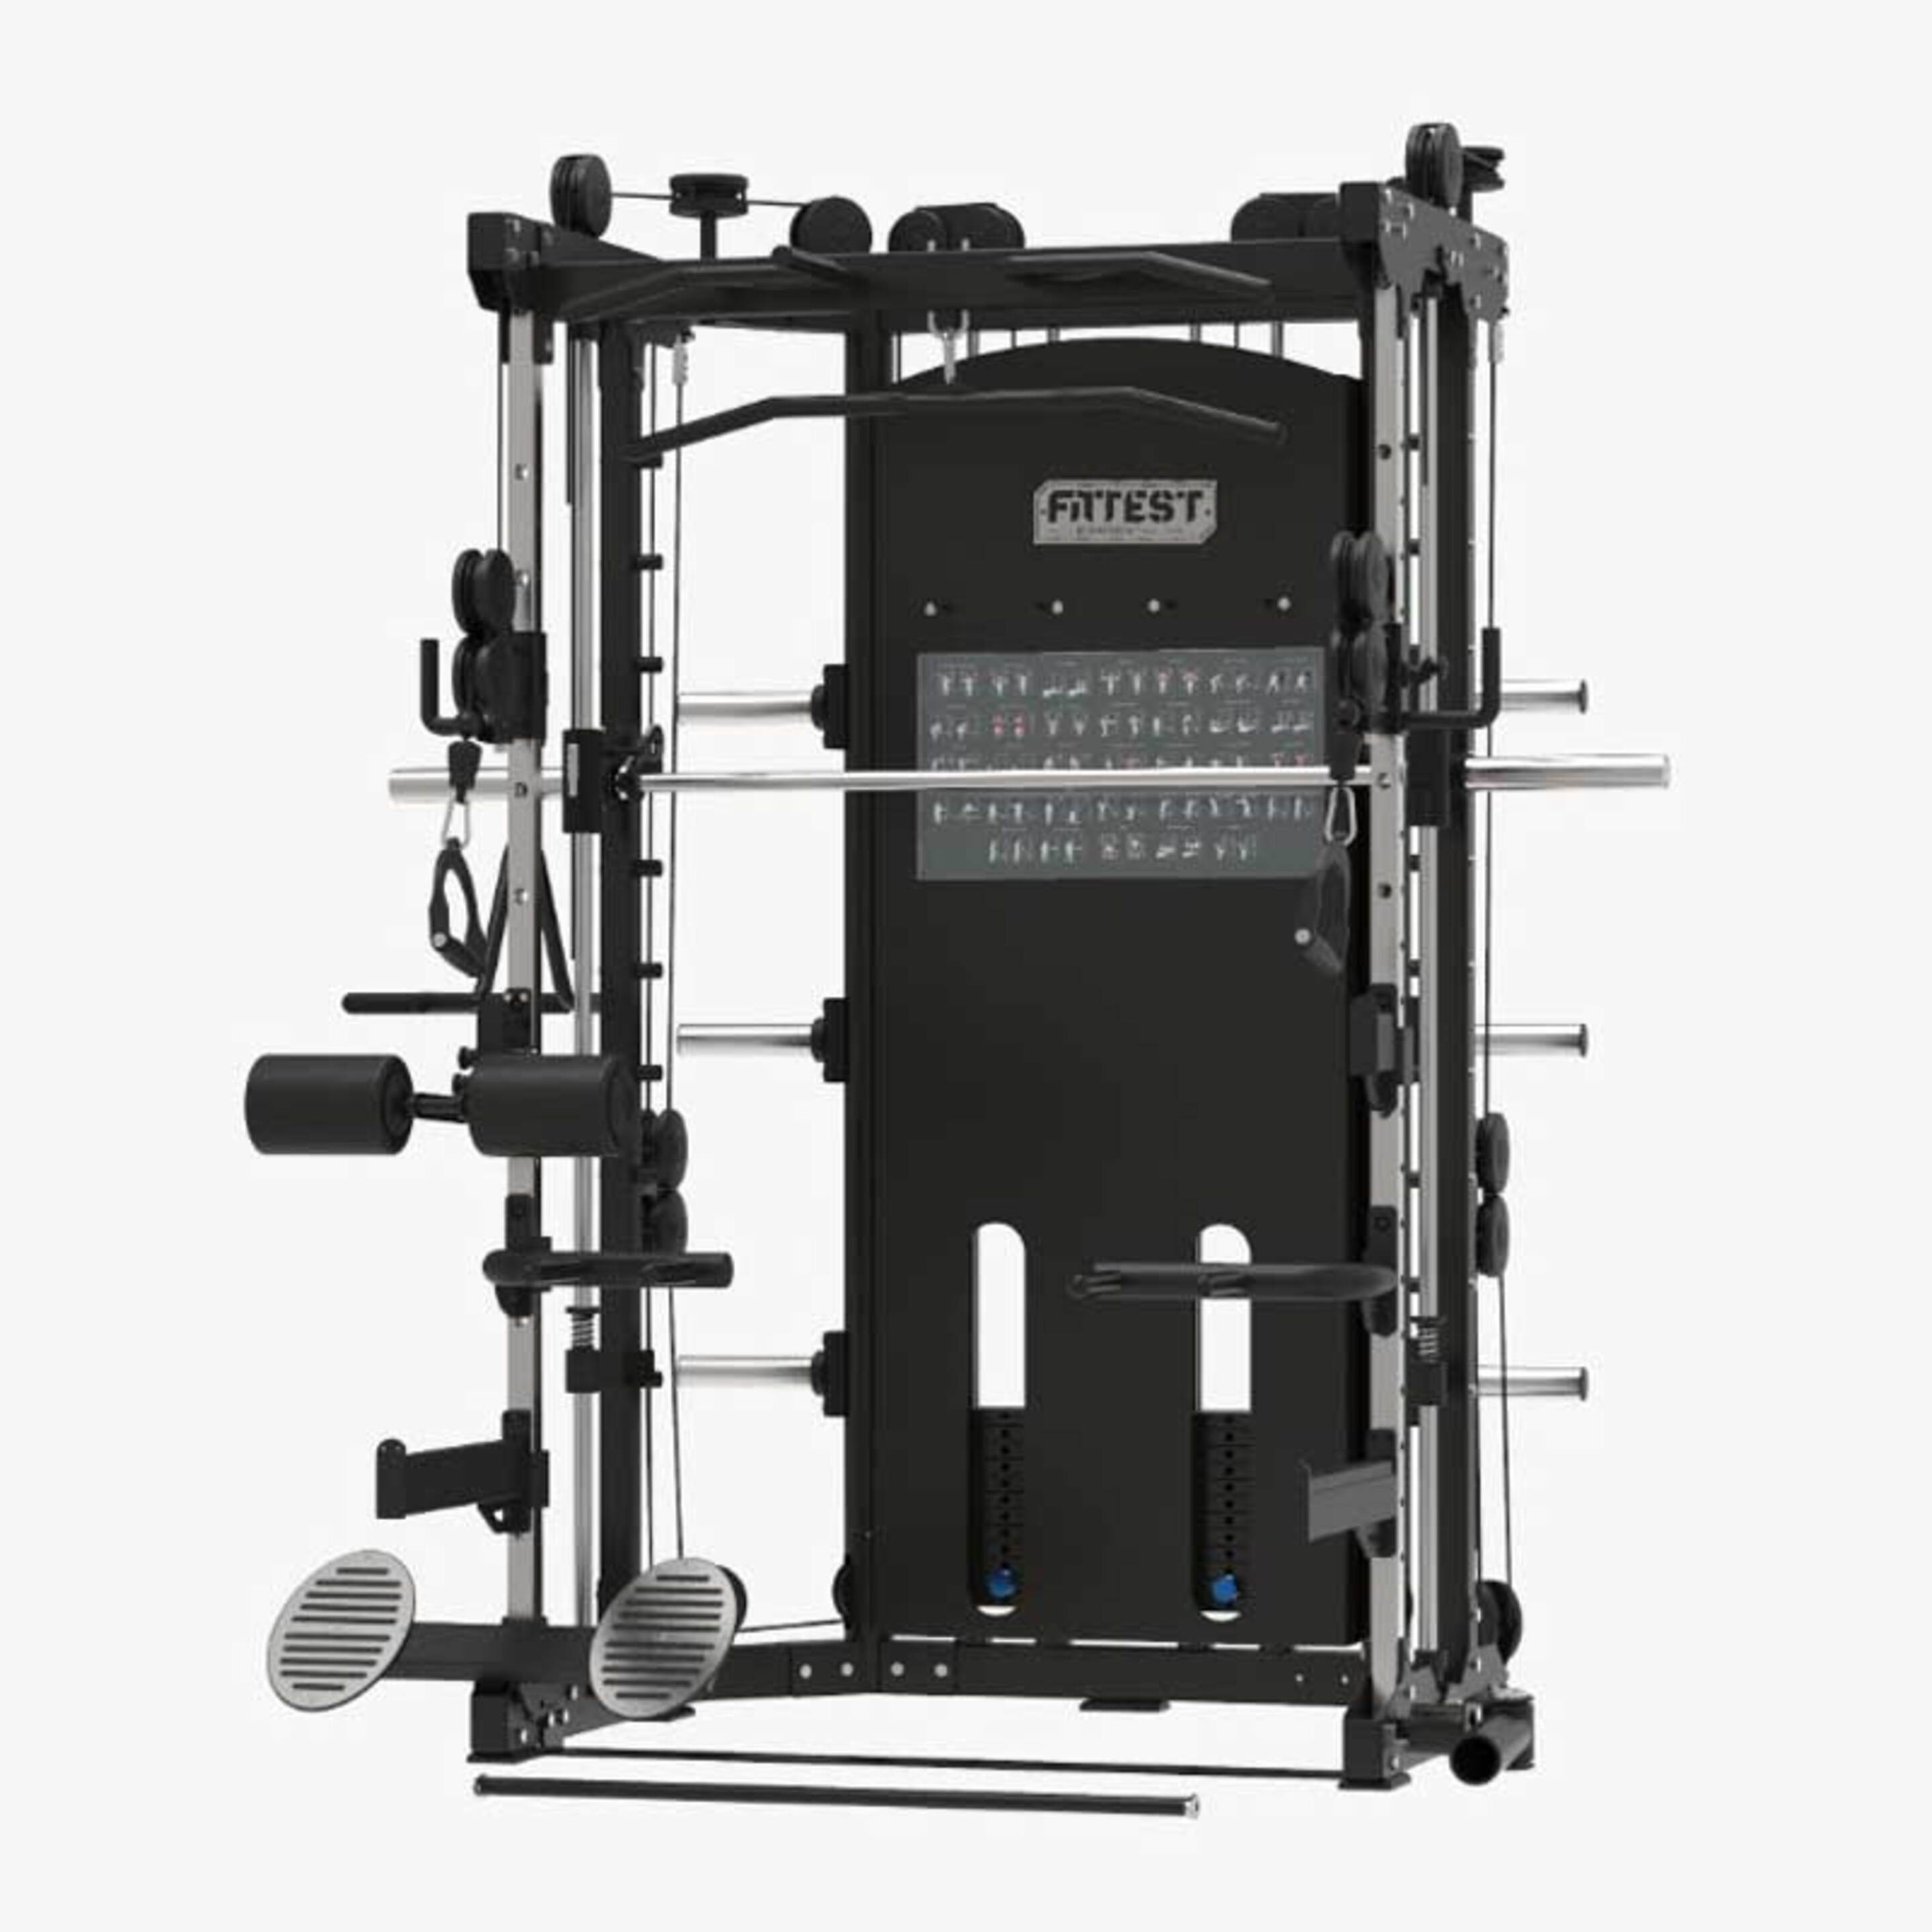 Smith 100 Máquina Multifunciones - Fittest Equipment - negro - 